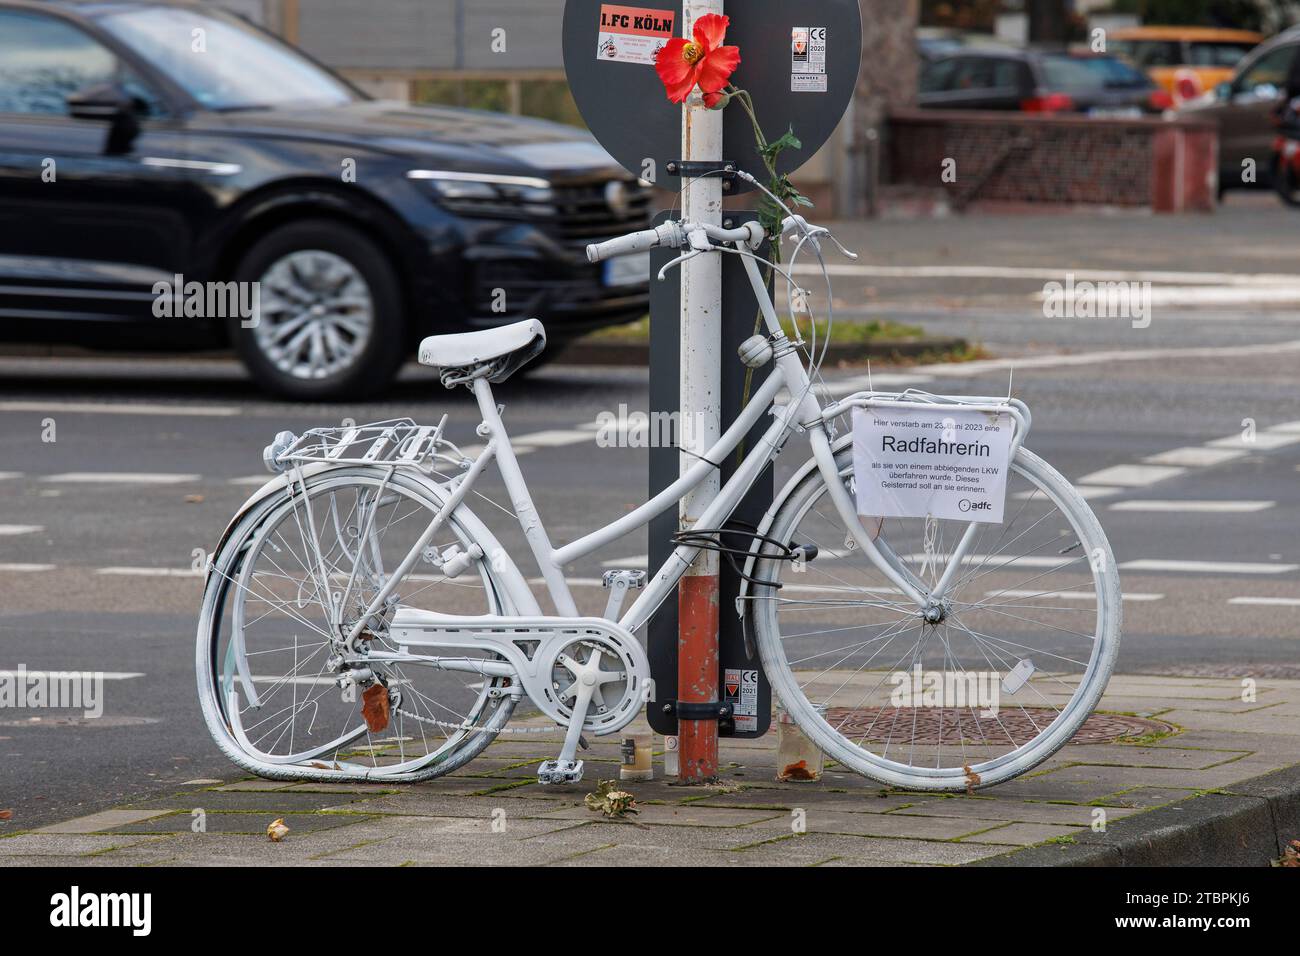 Vélo fantôme, vélo blanc rappelle une cycliste féminine, qui a eu un accident mortel à cet endroit, rue Riehler, Cologne, Allemagne. Geisterrad, weisses Fa Banque D'Images